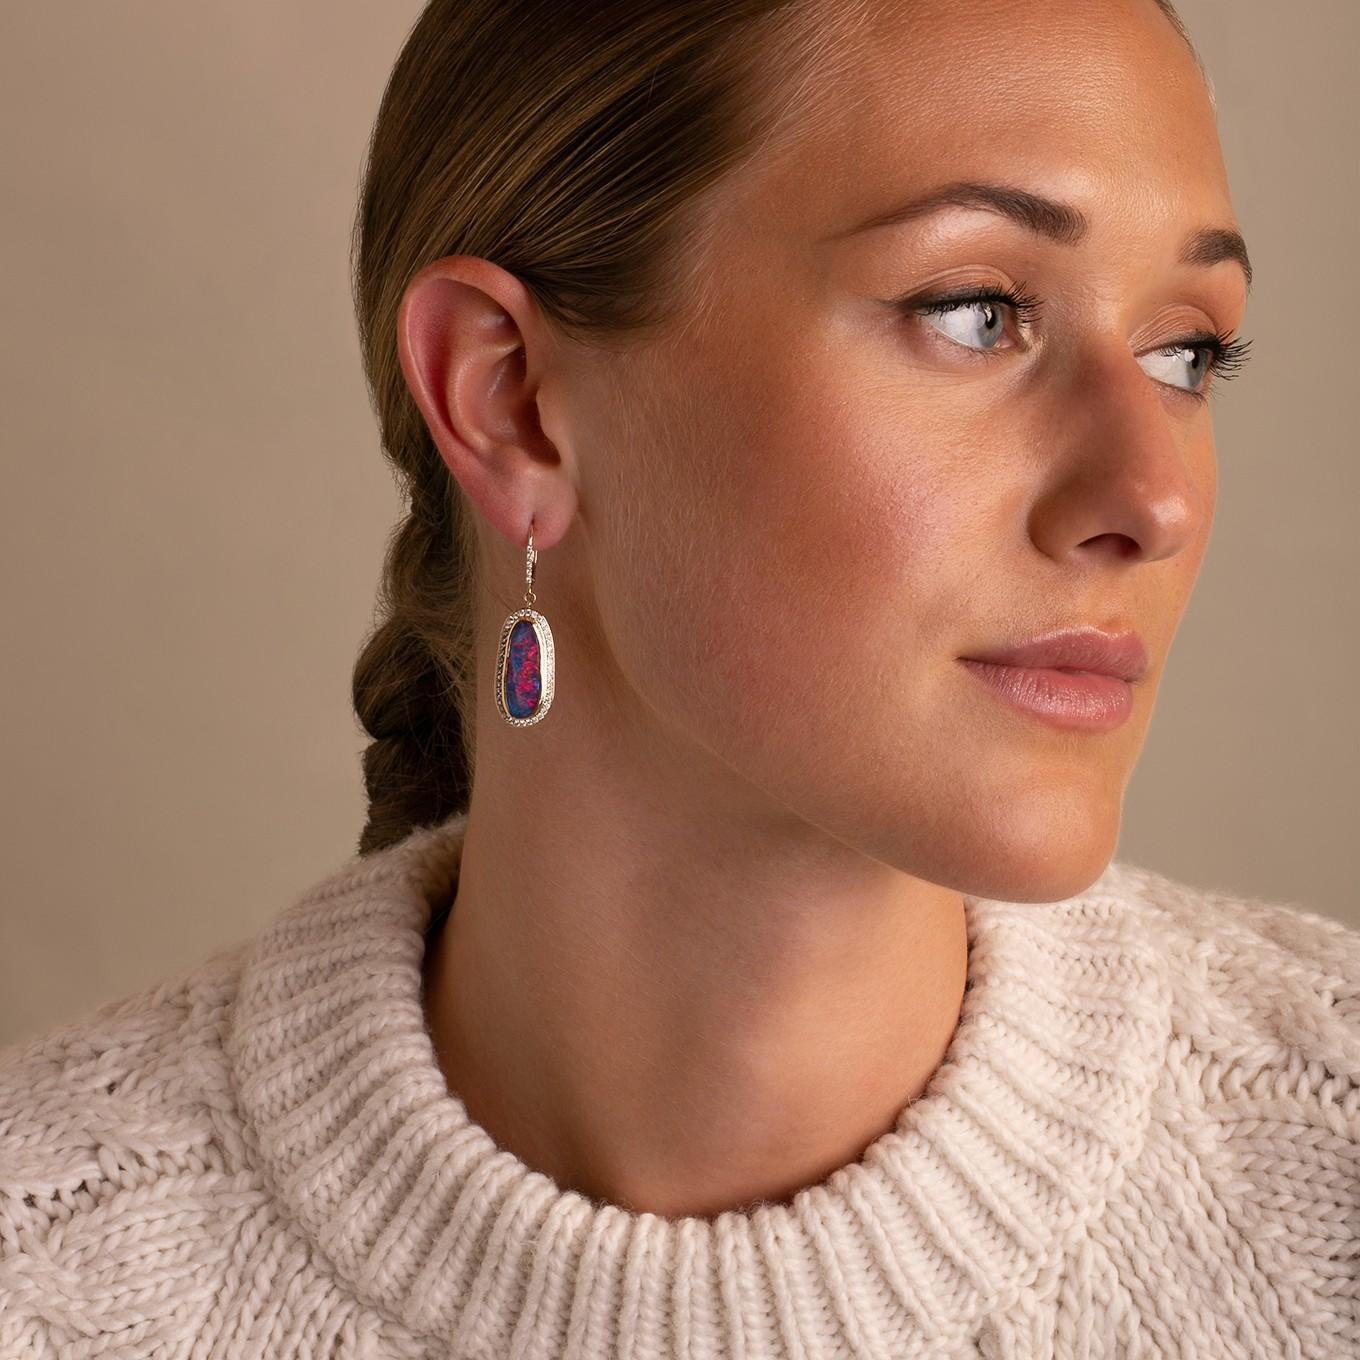 australian boulder opal drop earrings set in gold